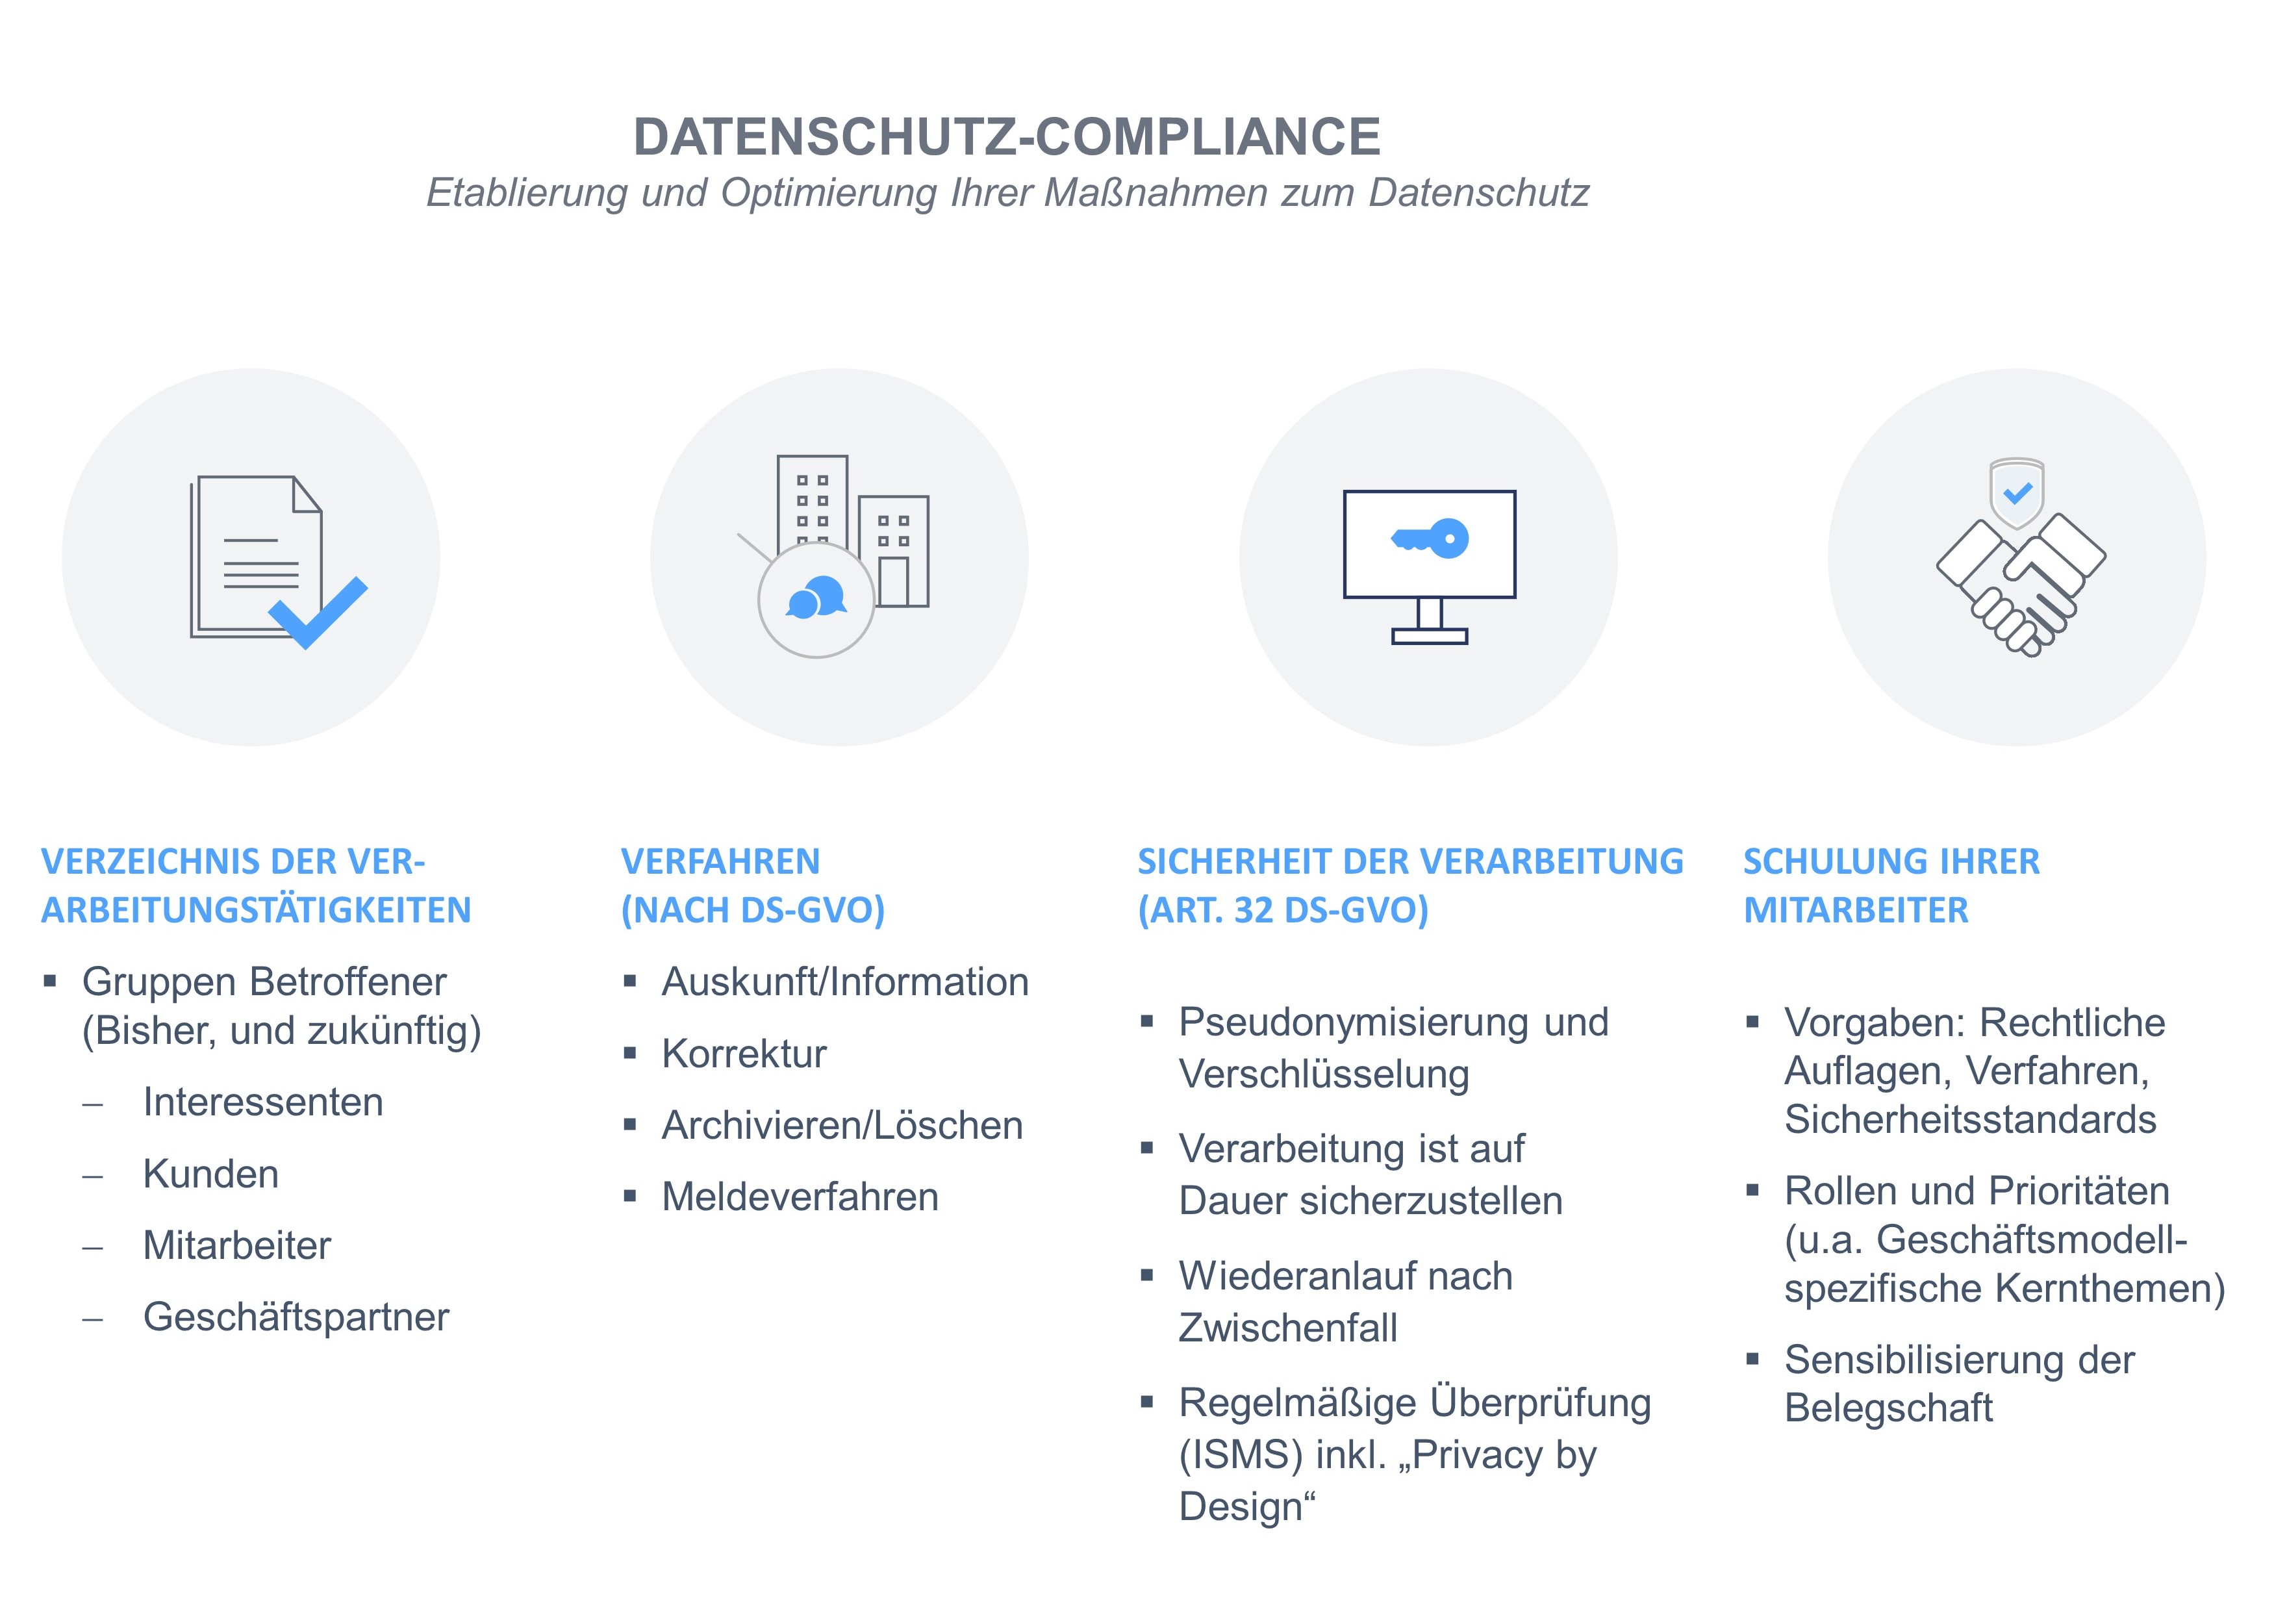 Datenschutz-Compliance - Day 1 für Neugründungen